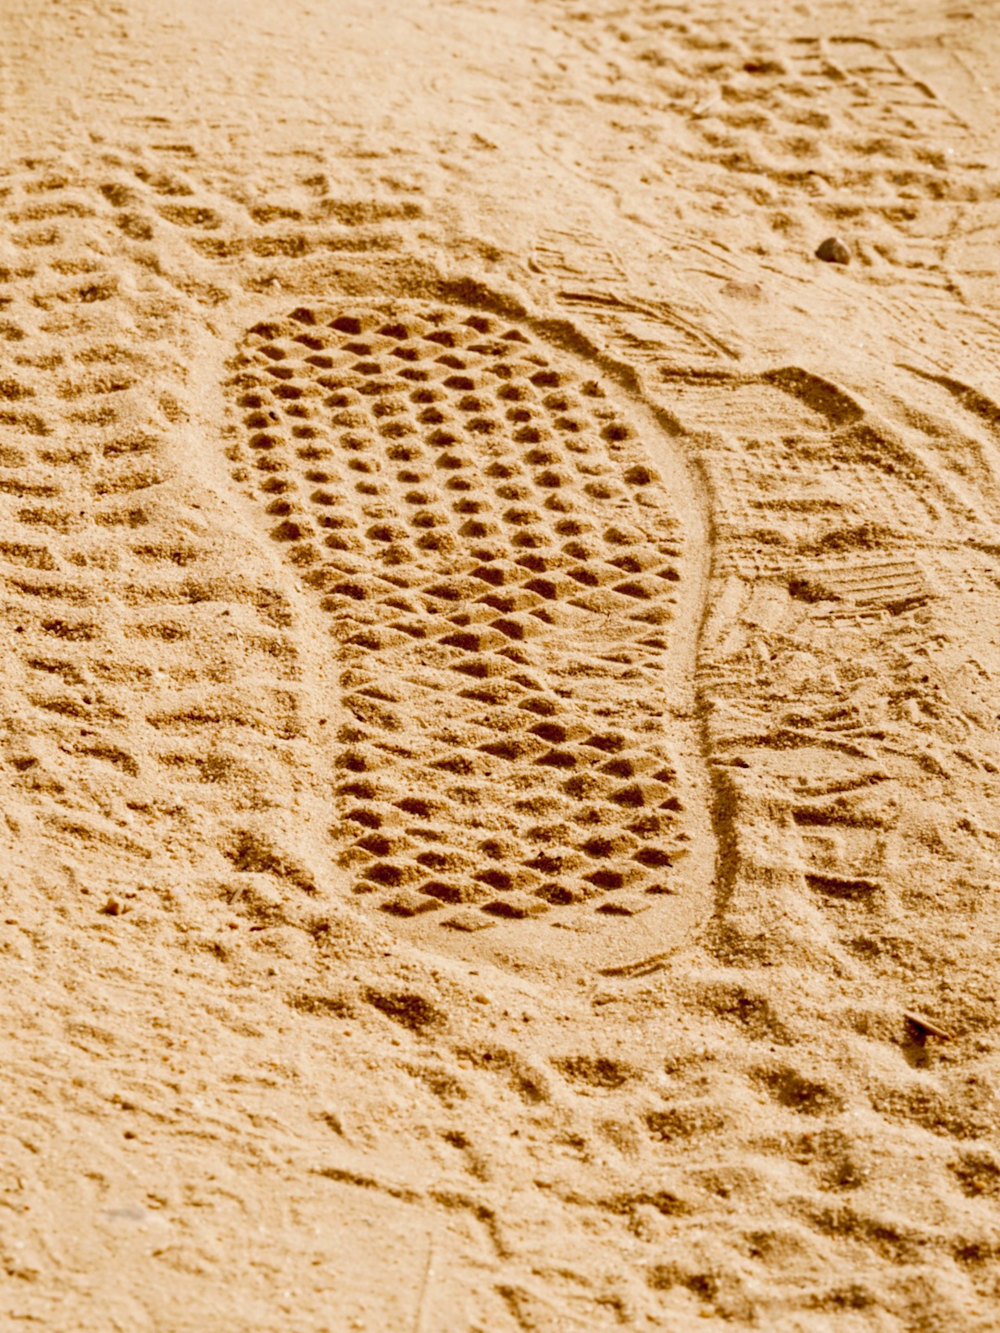 as marcas dos pés de uma pessoa na areia de uma praia